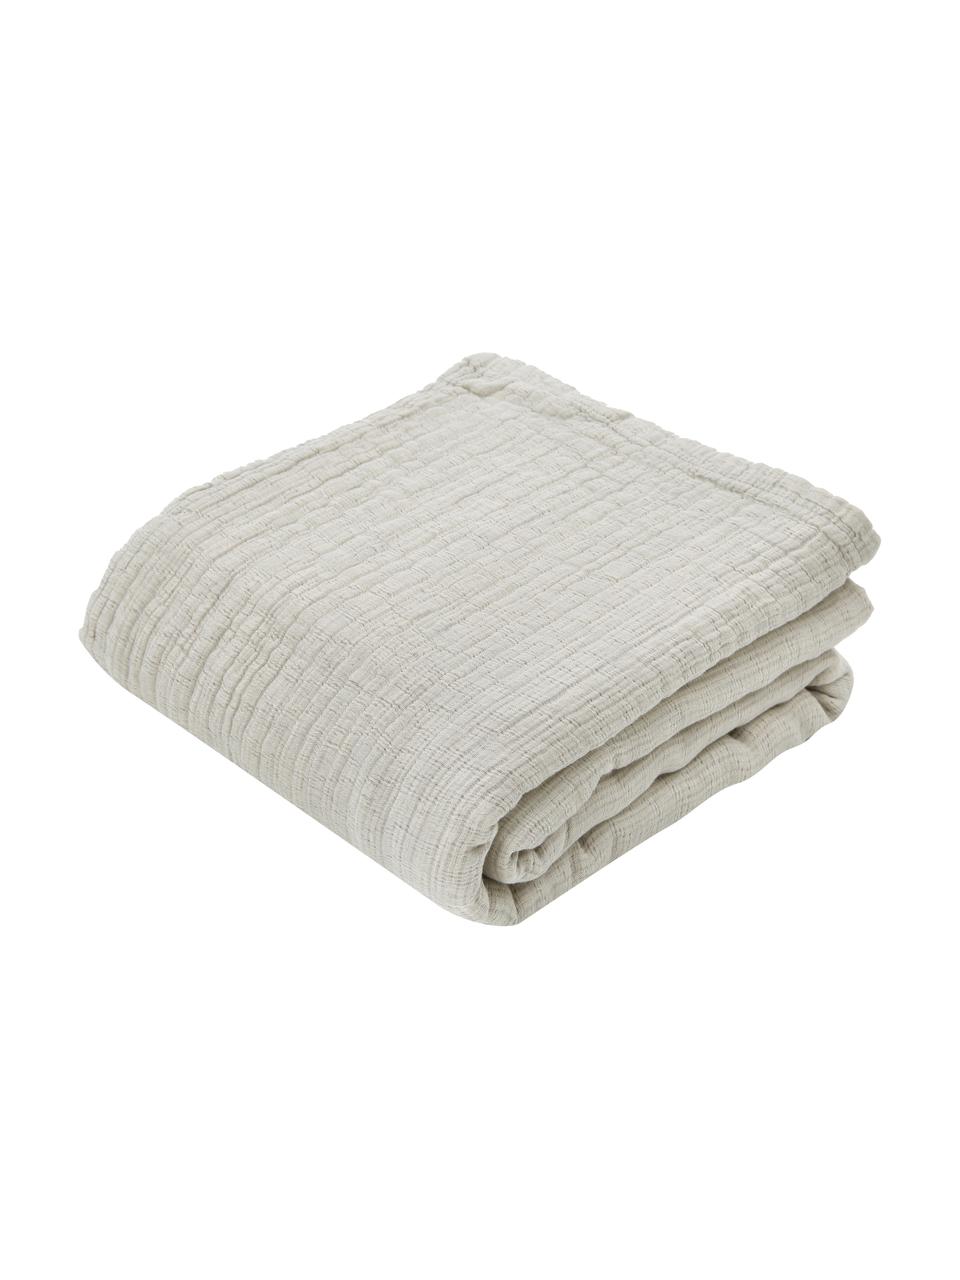 Tagesdecke Liv aus weichem Baumwollmusselin, 100% Baumwolle, Hellgrau, Beige, B 180 x L 260 cm (für Betten bis 140 x 200)